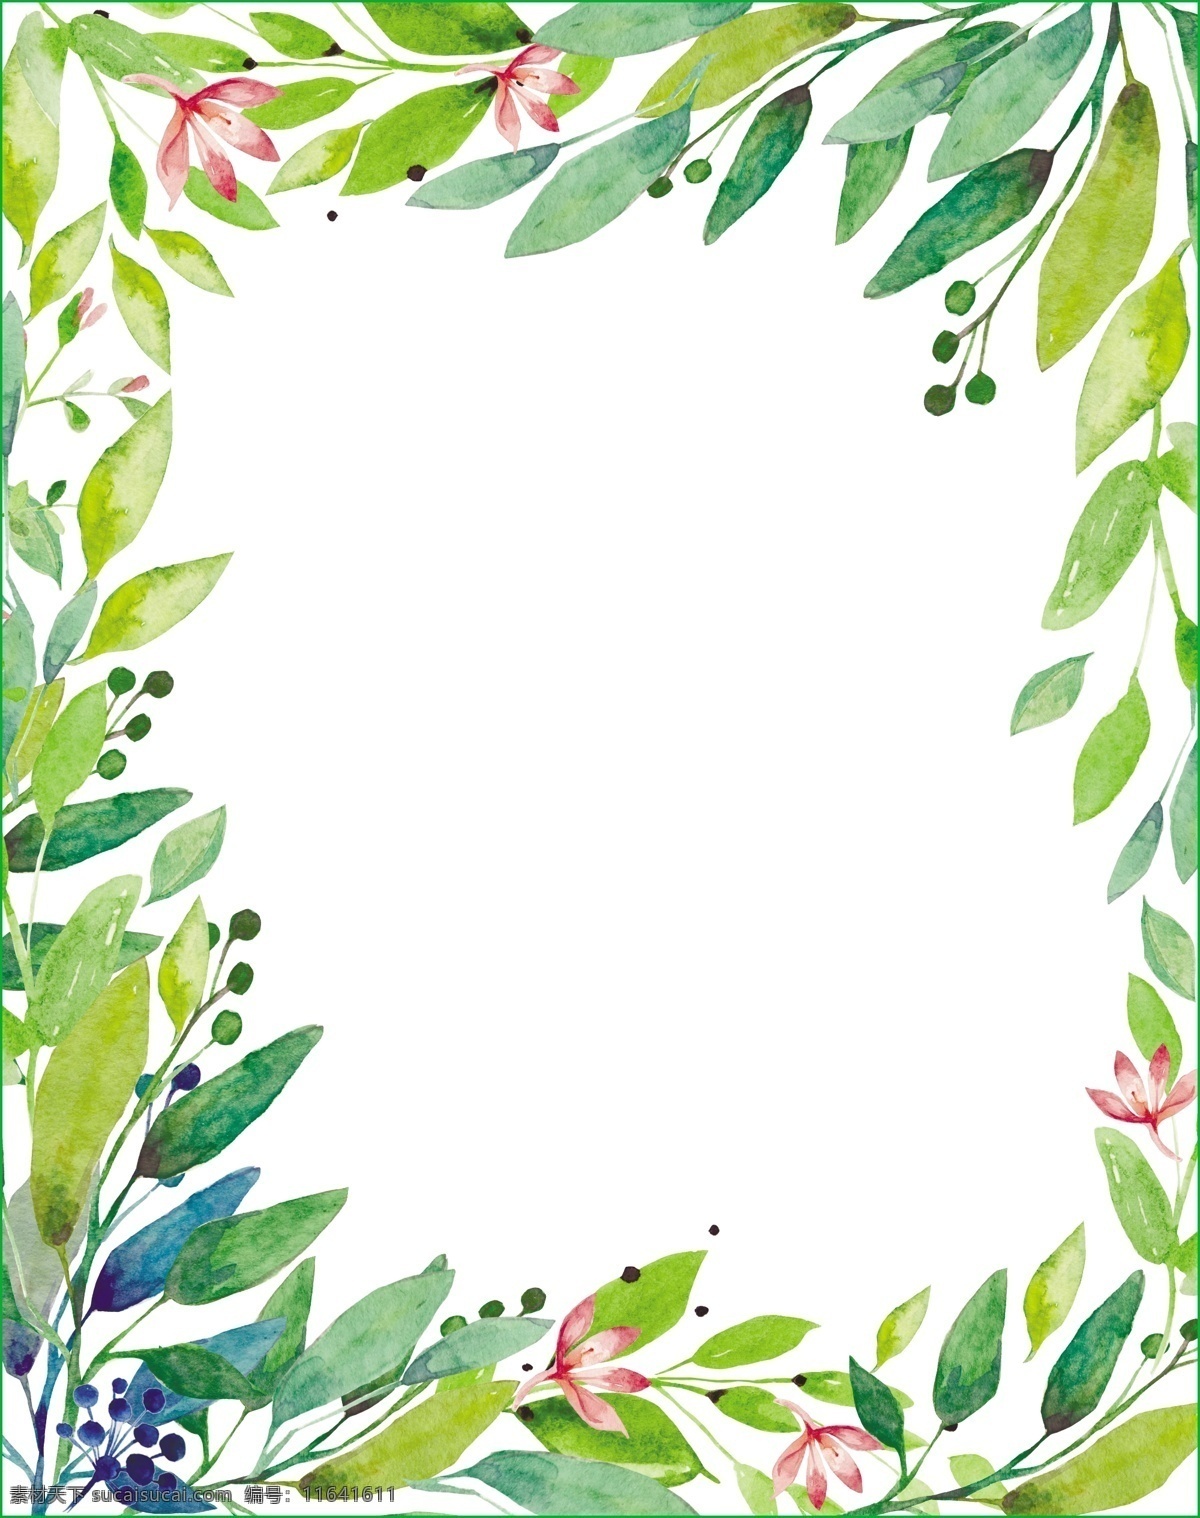 绿色 手绘 叶子 花朵 卡通 矢量 矢量素材 设计素材 平面素材